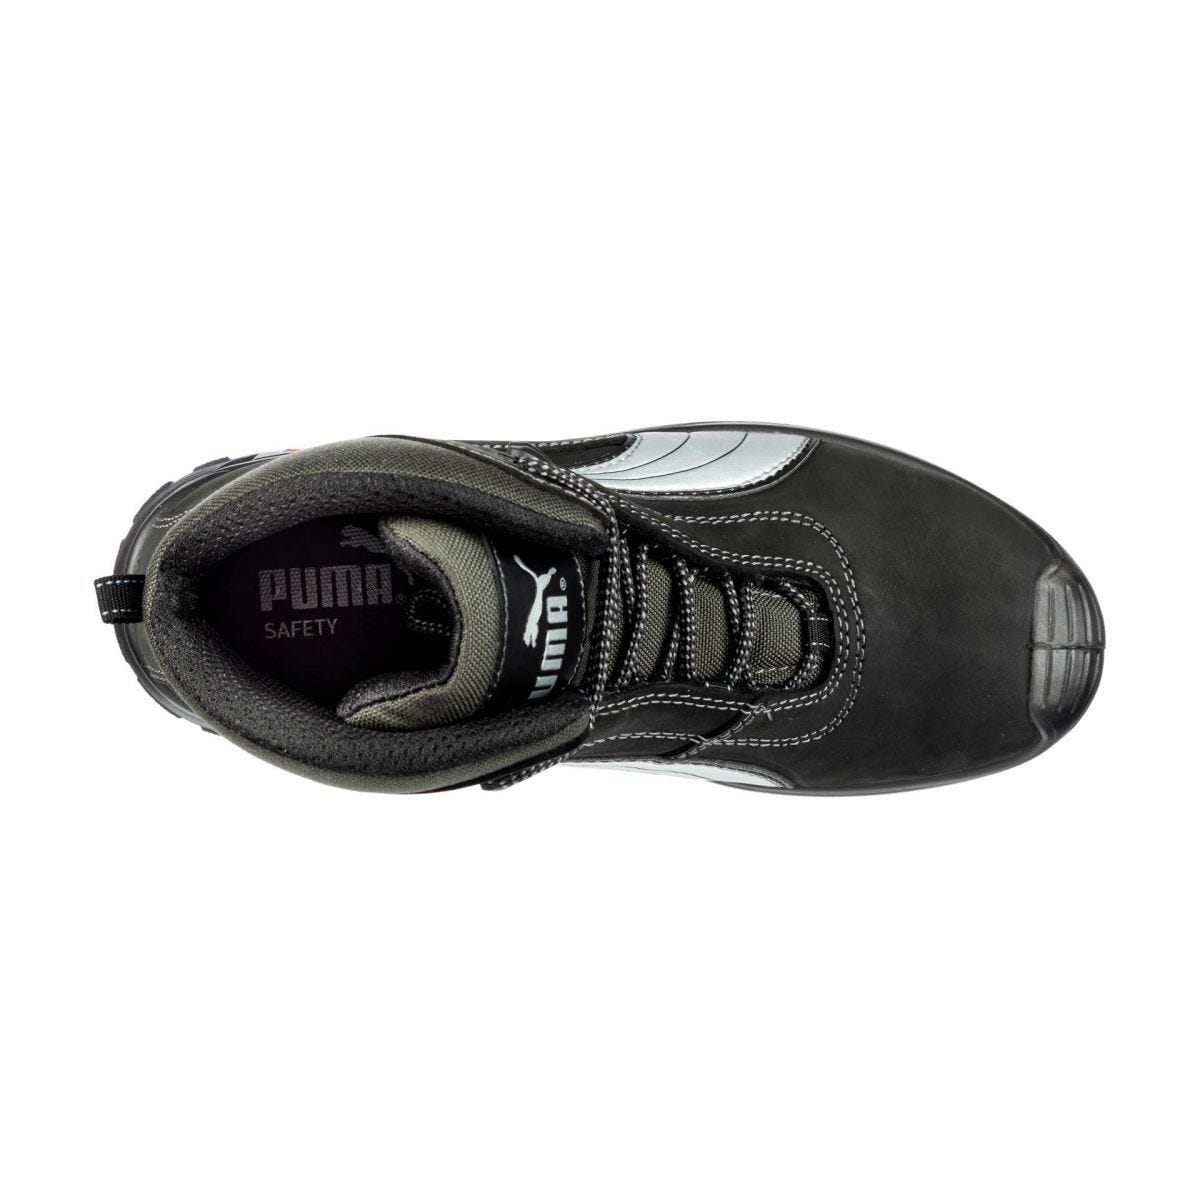 Chaussures de sécurité Cascades mid S3 HRO SRC - Puma - Taille 47 2